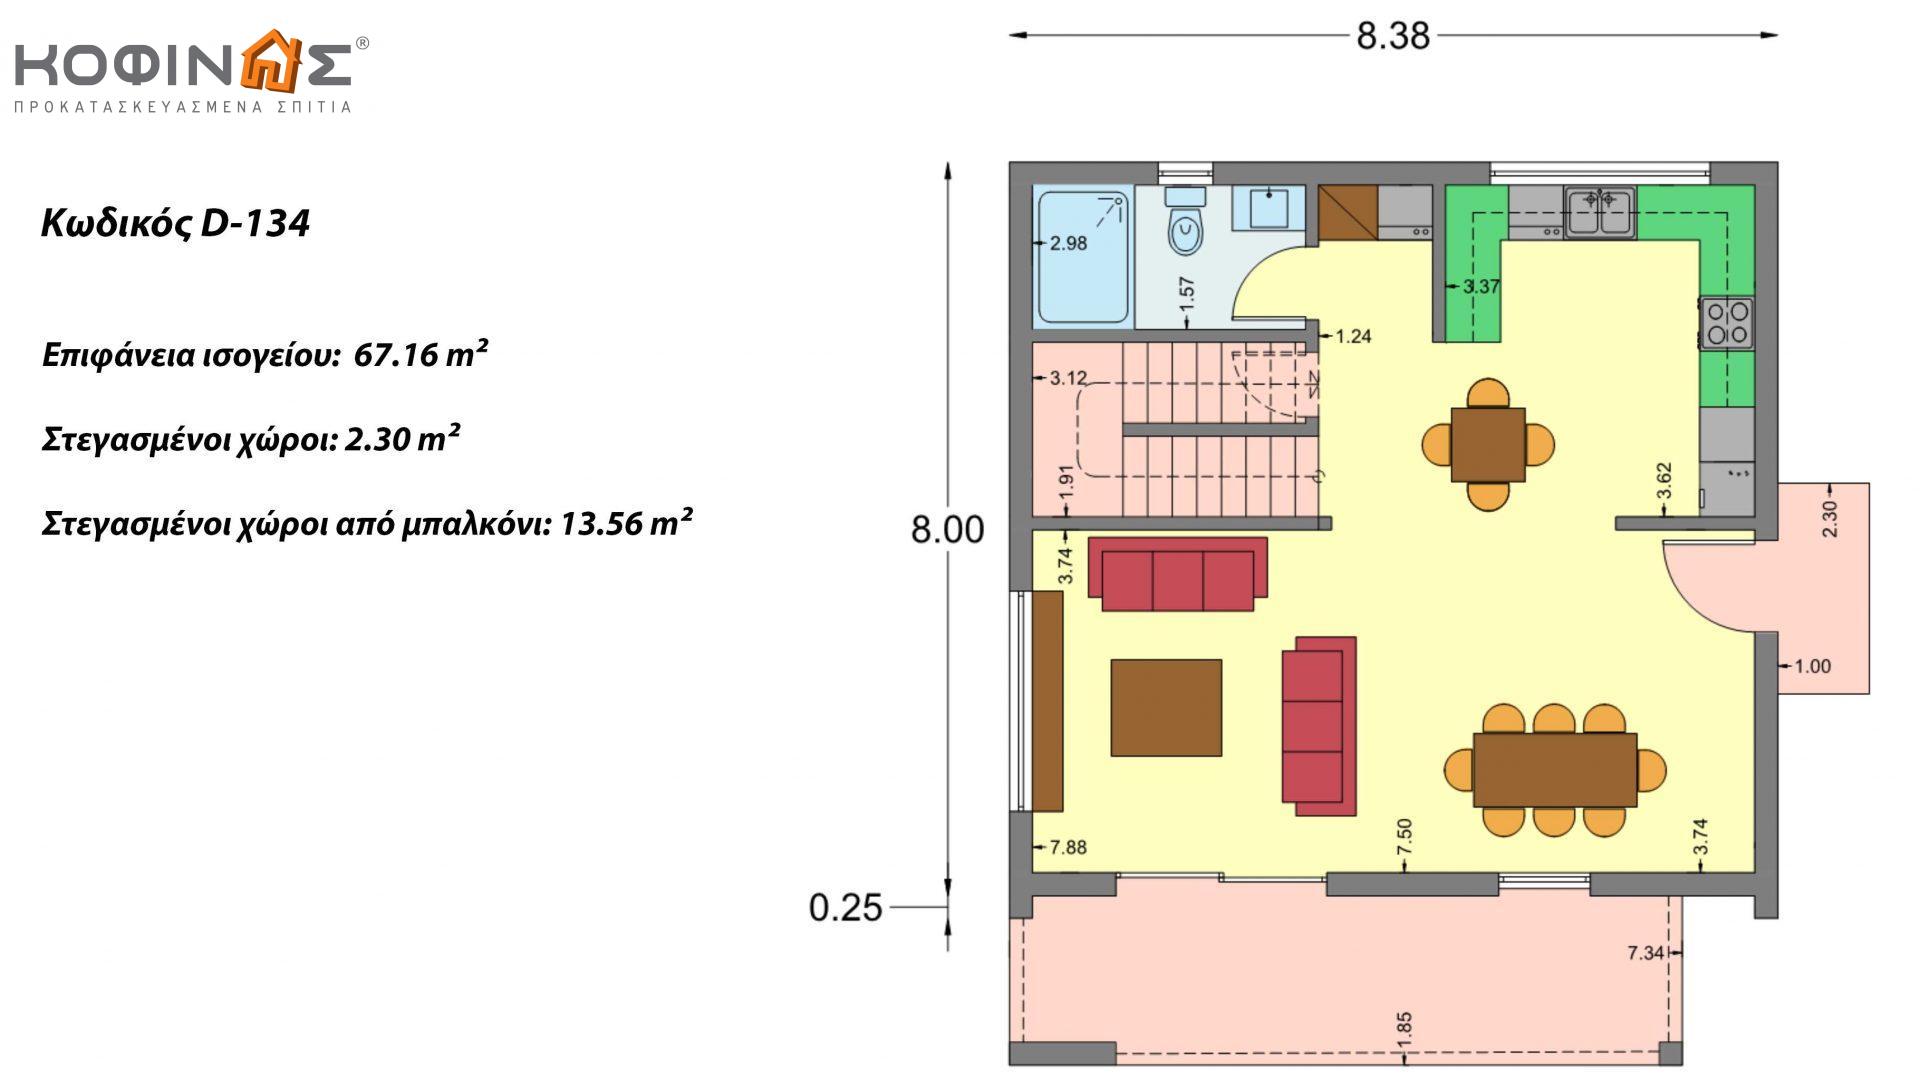 Διώροφη Κατοικία D-134, συνολικής επιφάνειας 134,26 τ.μ., συνολική επιφάνεια στεγασμένων χώρων 31,28 τ.μ., μπαλκόνια 13,56 τ.μ.